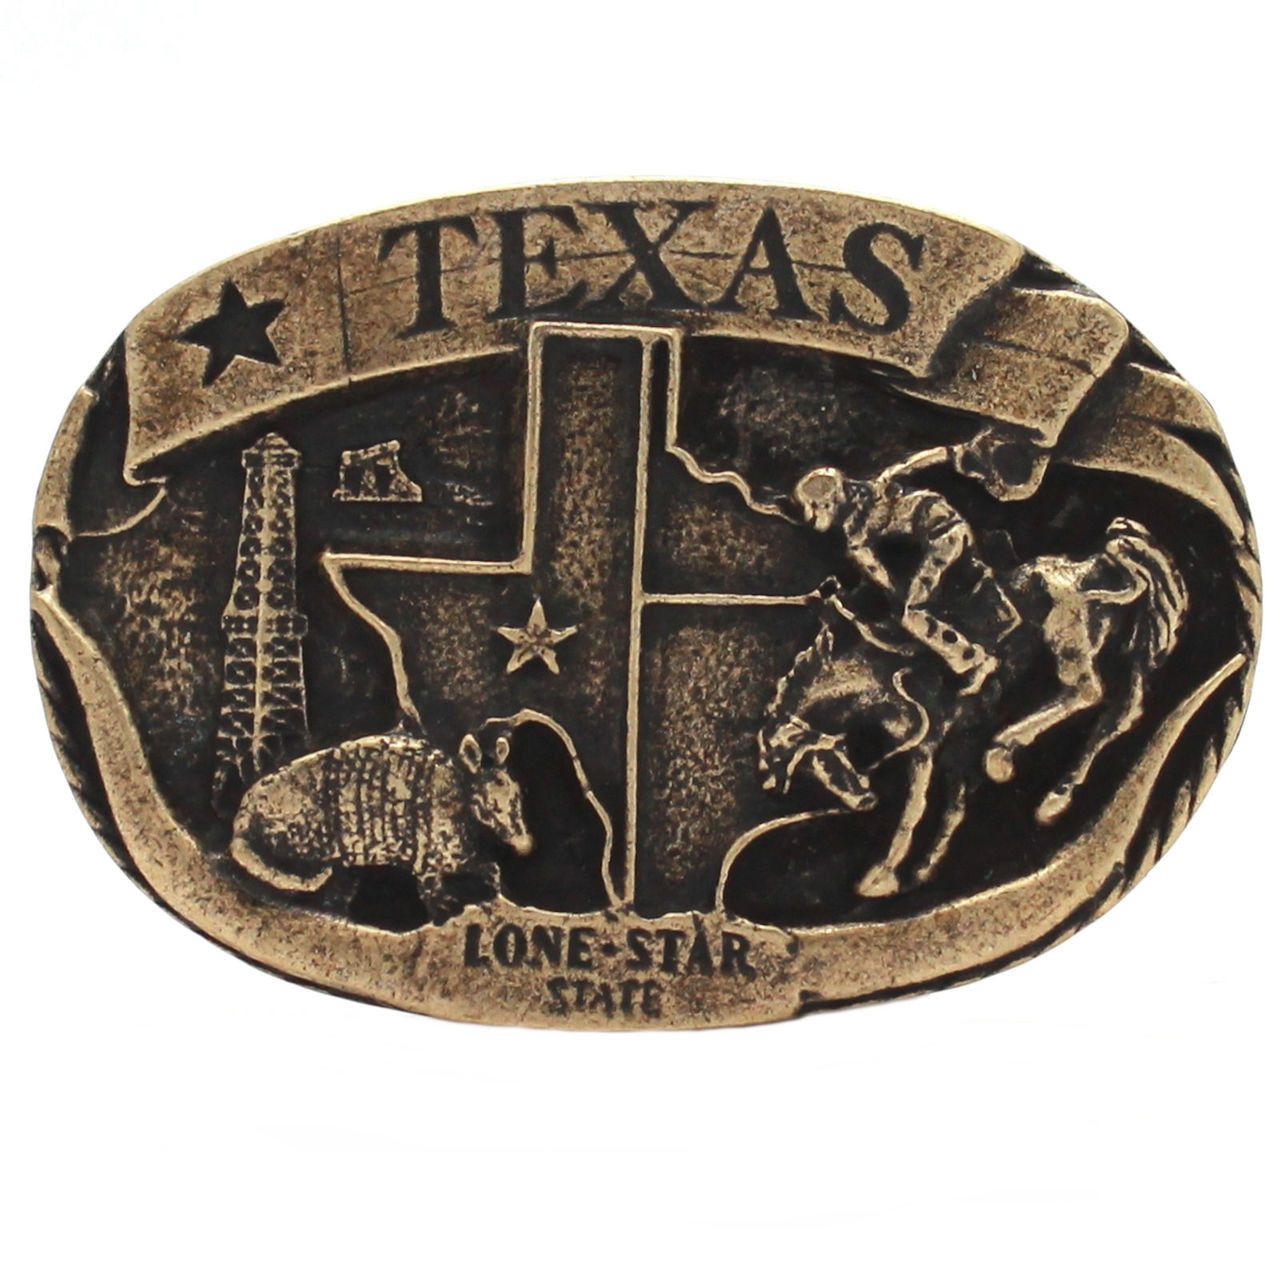 Texas Lone Star Metal Belt Buckle Antique Brass 6003-09 USA - Stecksstore